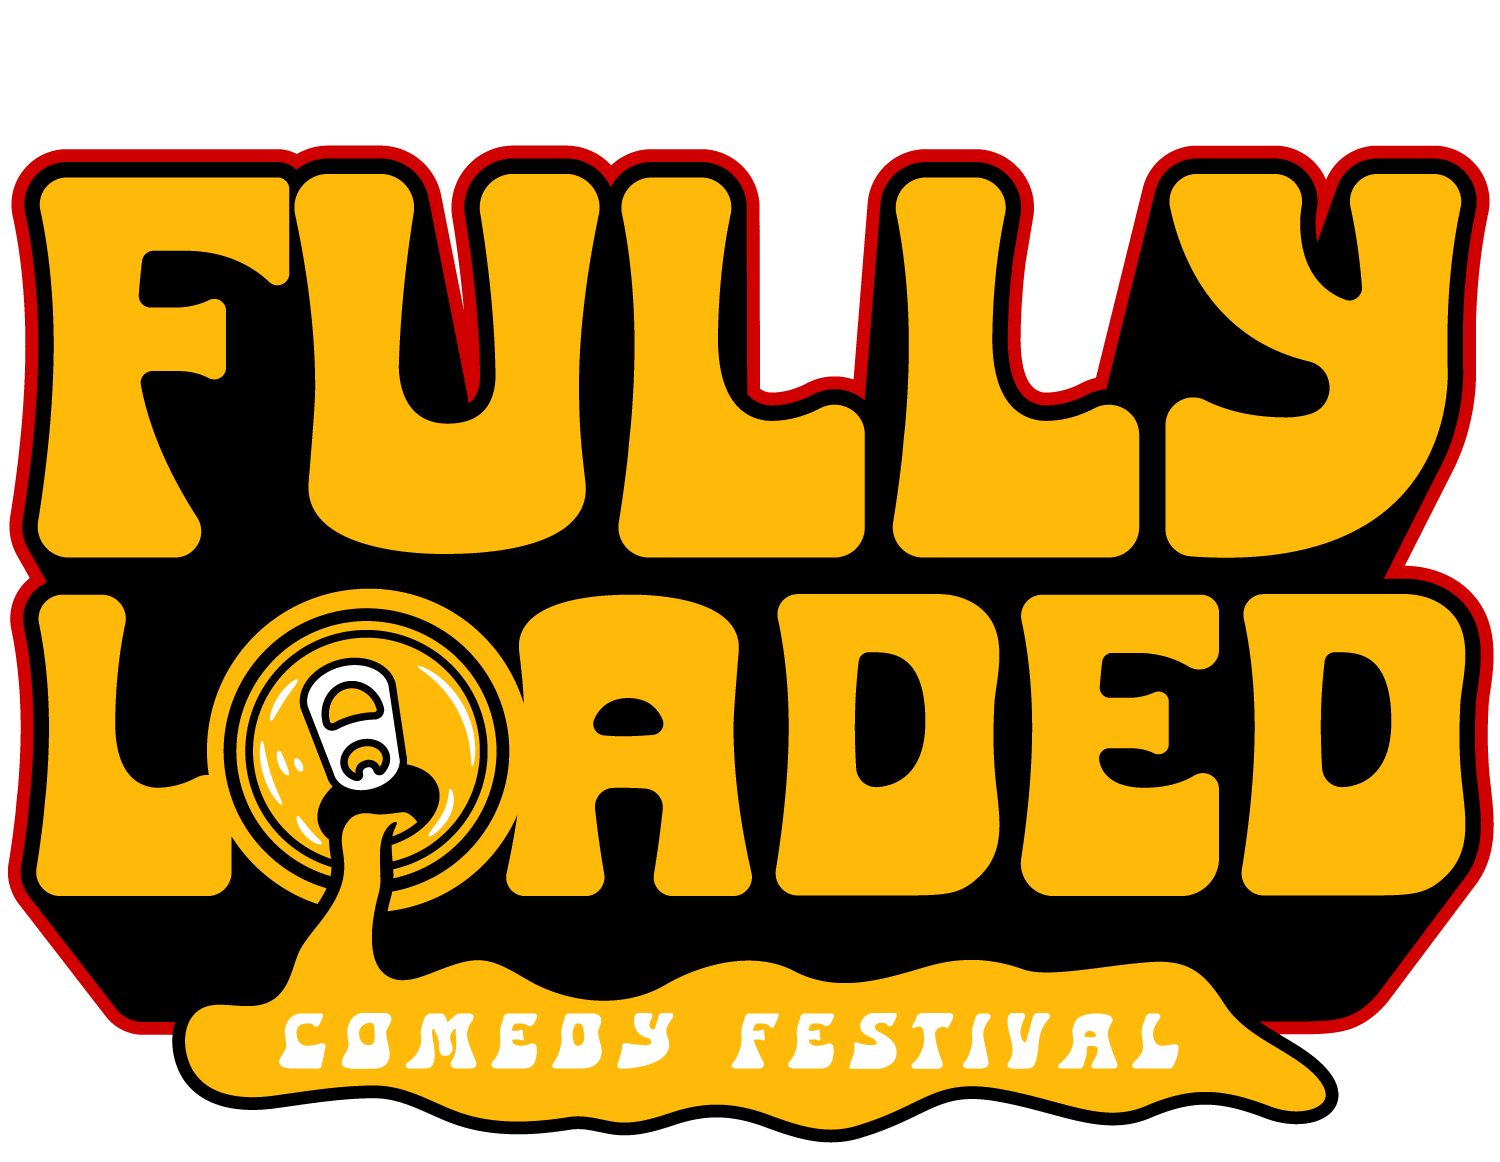 Bert Kreischer's Fully Loaded Comedy Festival